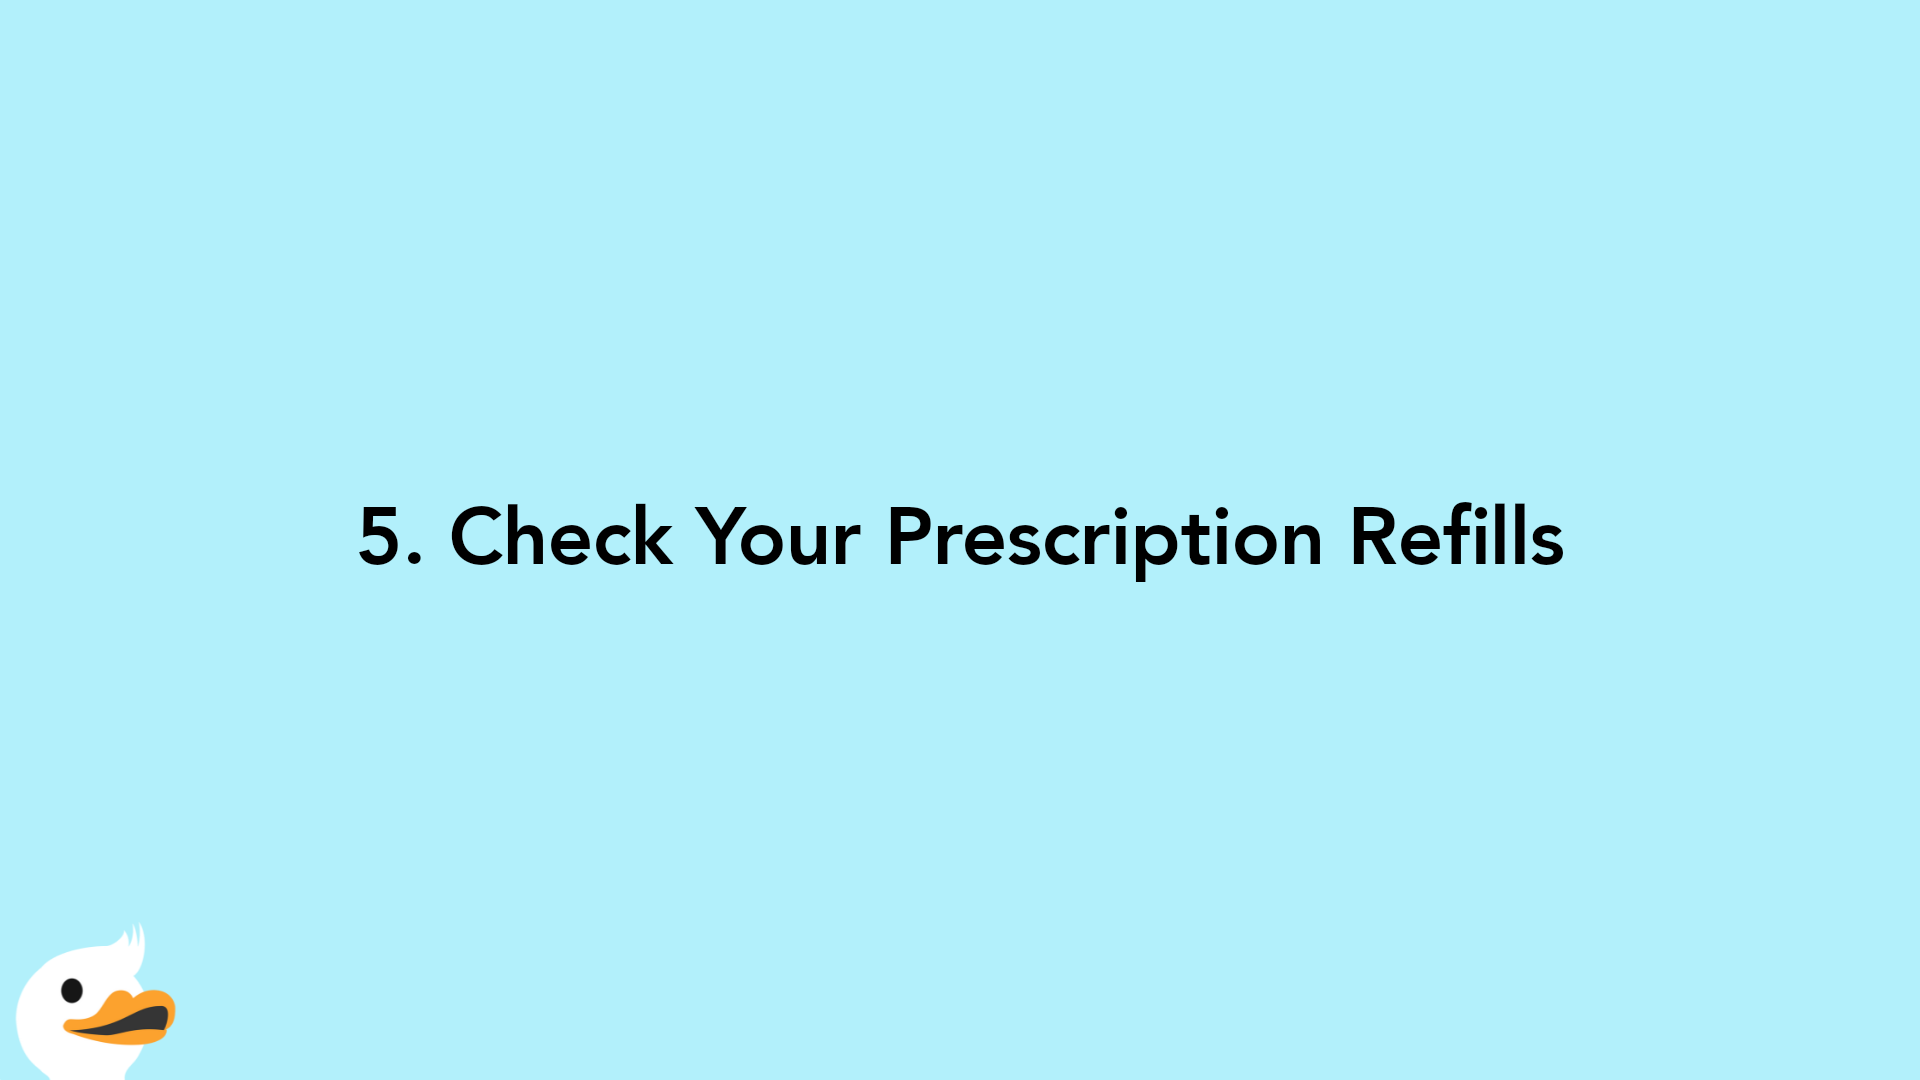 5. Check Your Prescription Refills